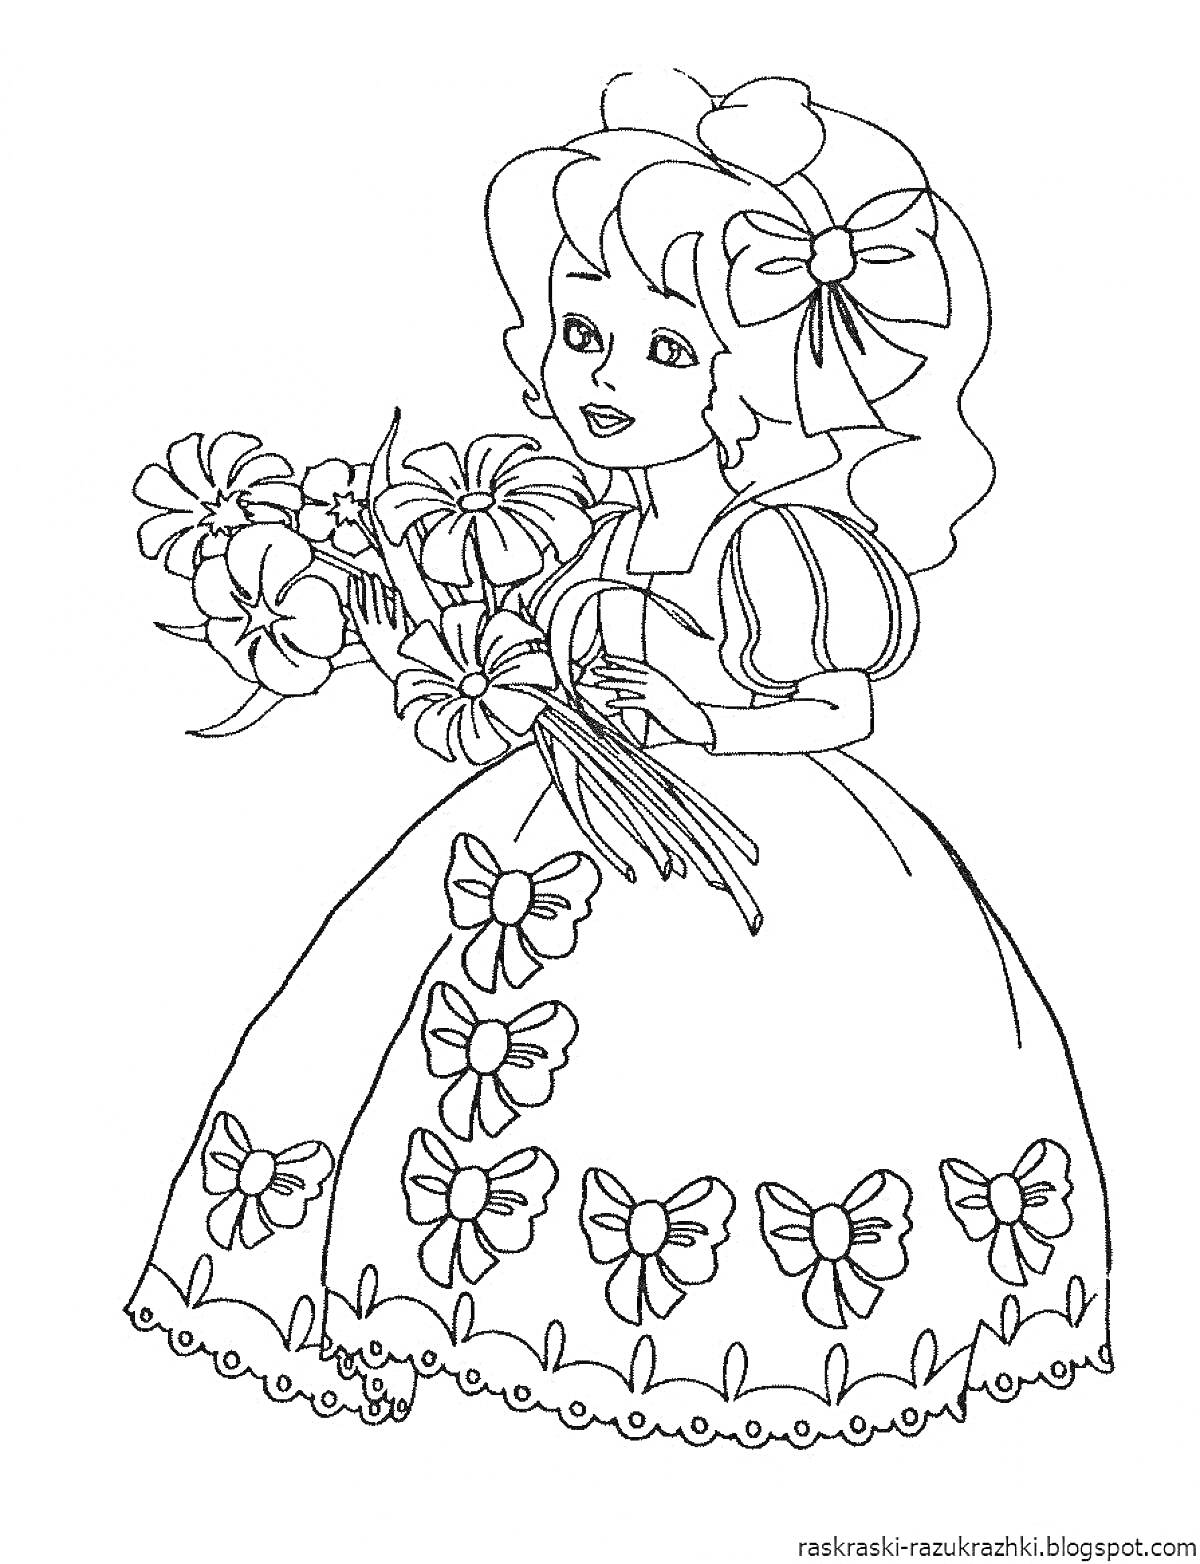 Раскраска Девочка с бантом в волосах и букетом цветов в руке, платье с бантиками